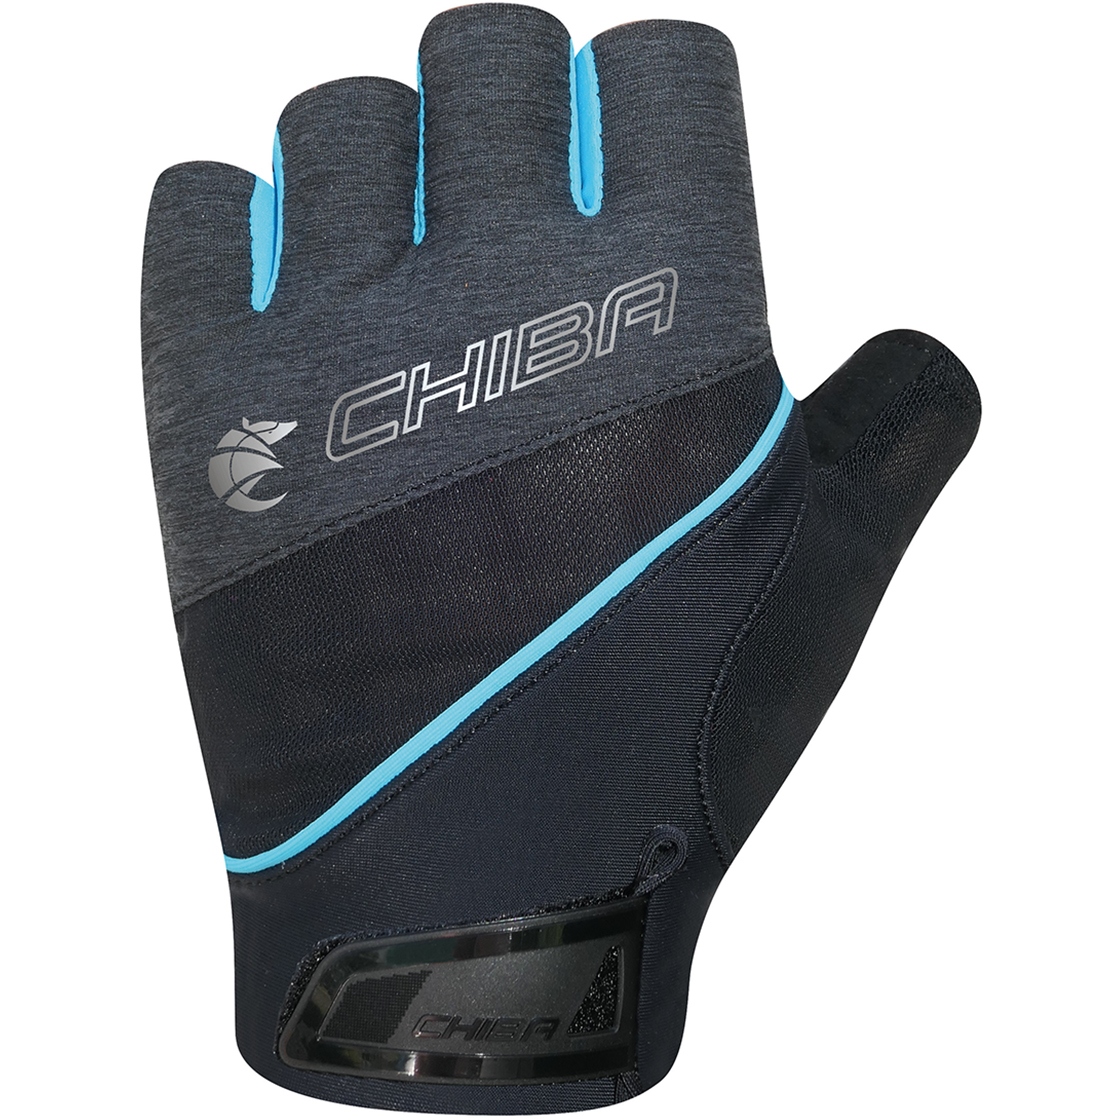 Produktbild von Chiba Gel Premium III Kurzfinger-Handschuhe Damen - schwarz/türkis